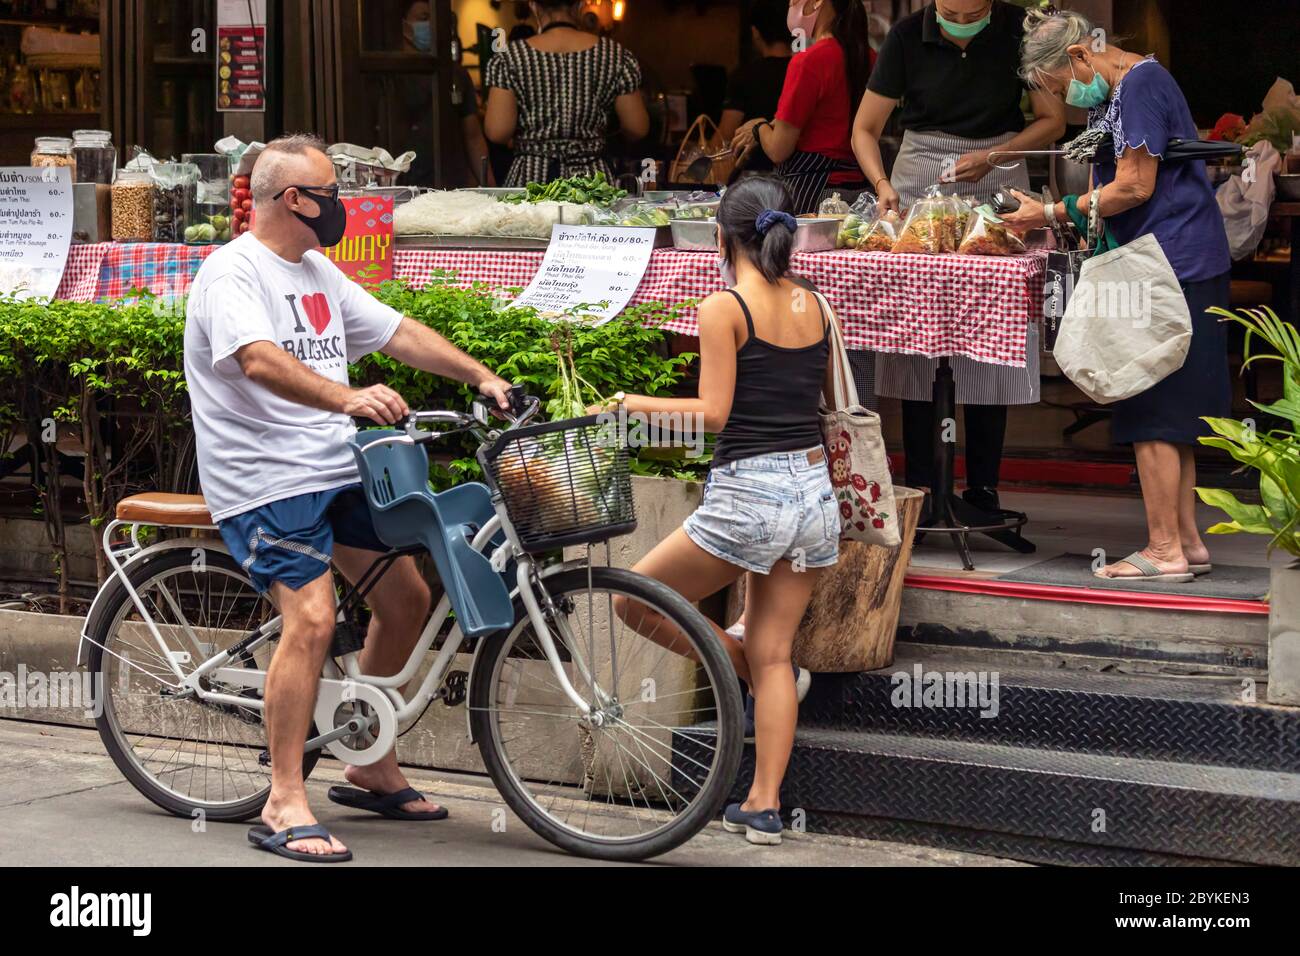 Famille avec masque facial et vélo à emporter au stand de nourriture pendant la pandémie de Covid, Bangkok, Thaïlande Banque D'Images